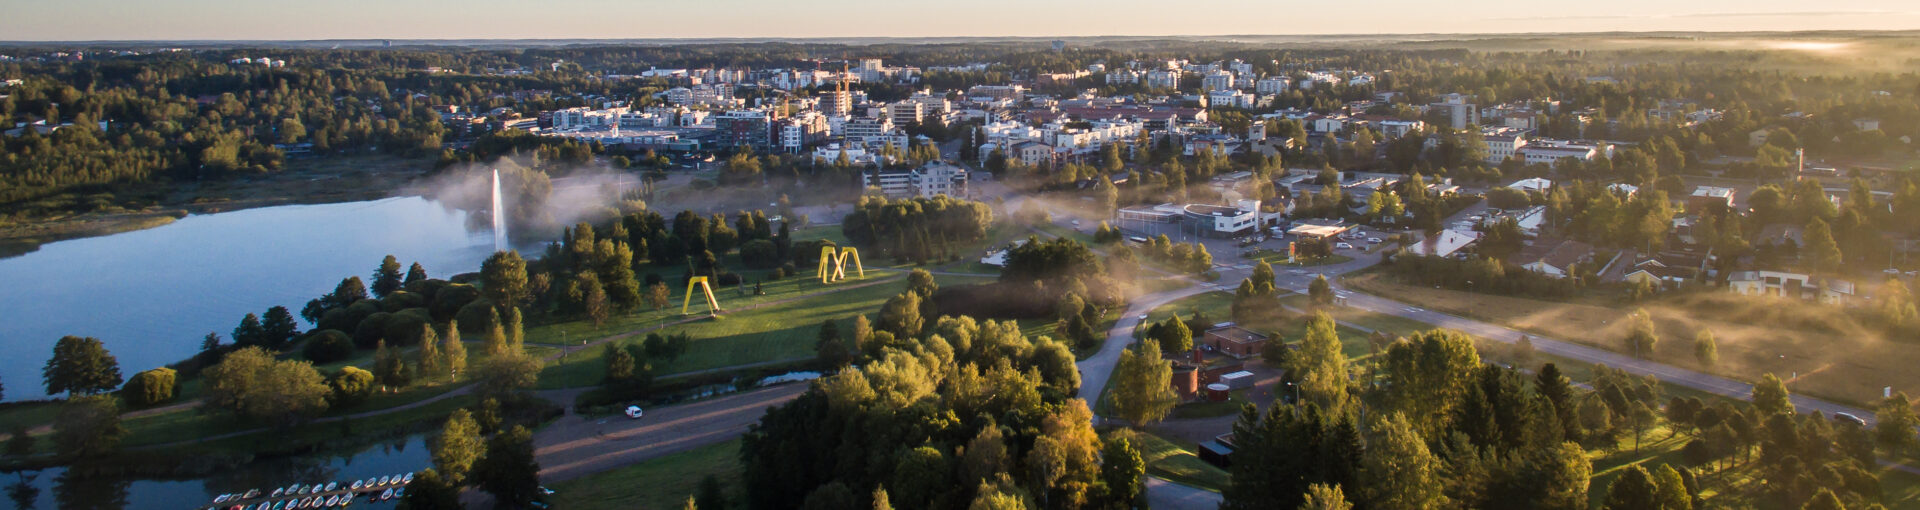 Ilmakuva Järvenpään kaupungista kesäaikaan, aamusumu kaupungin yllä.